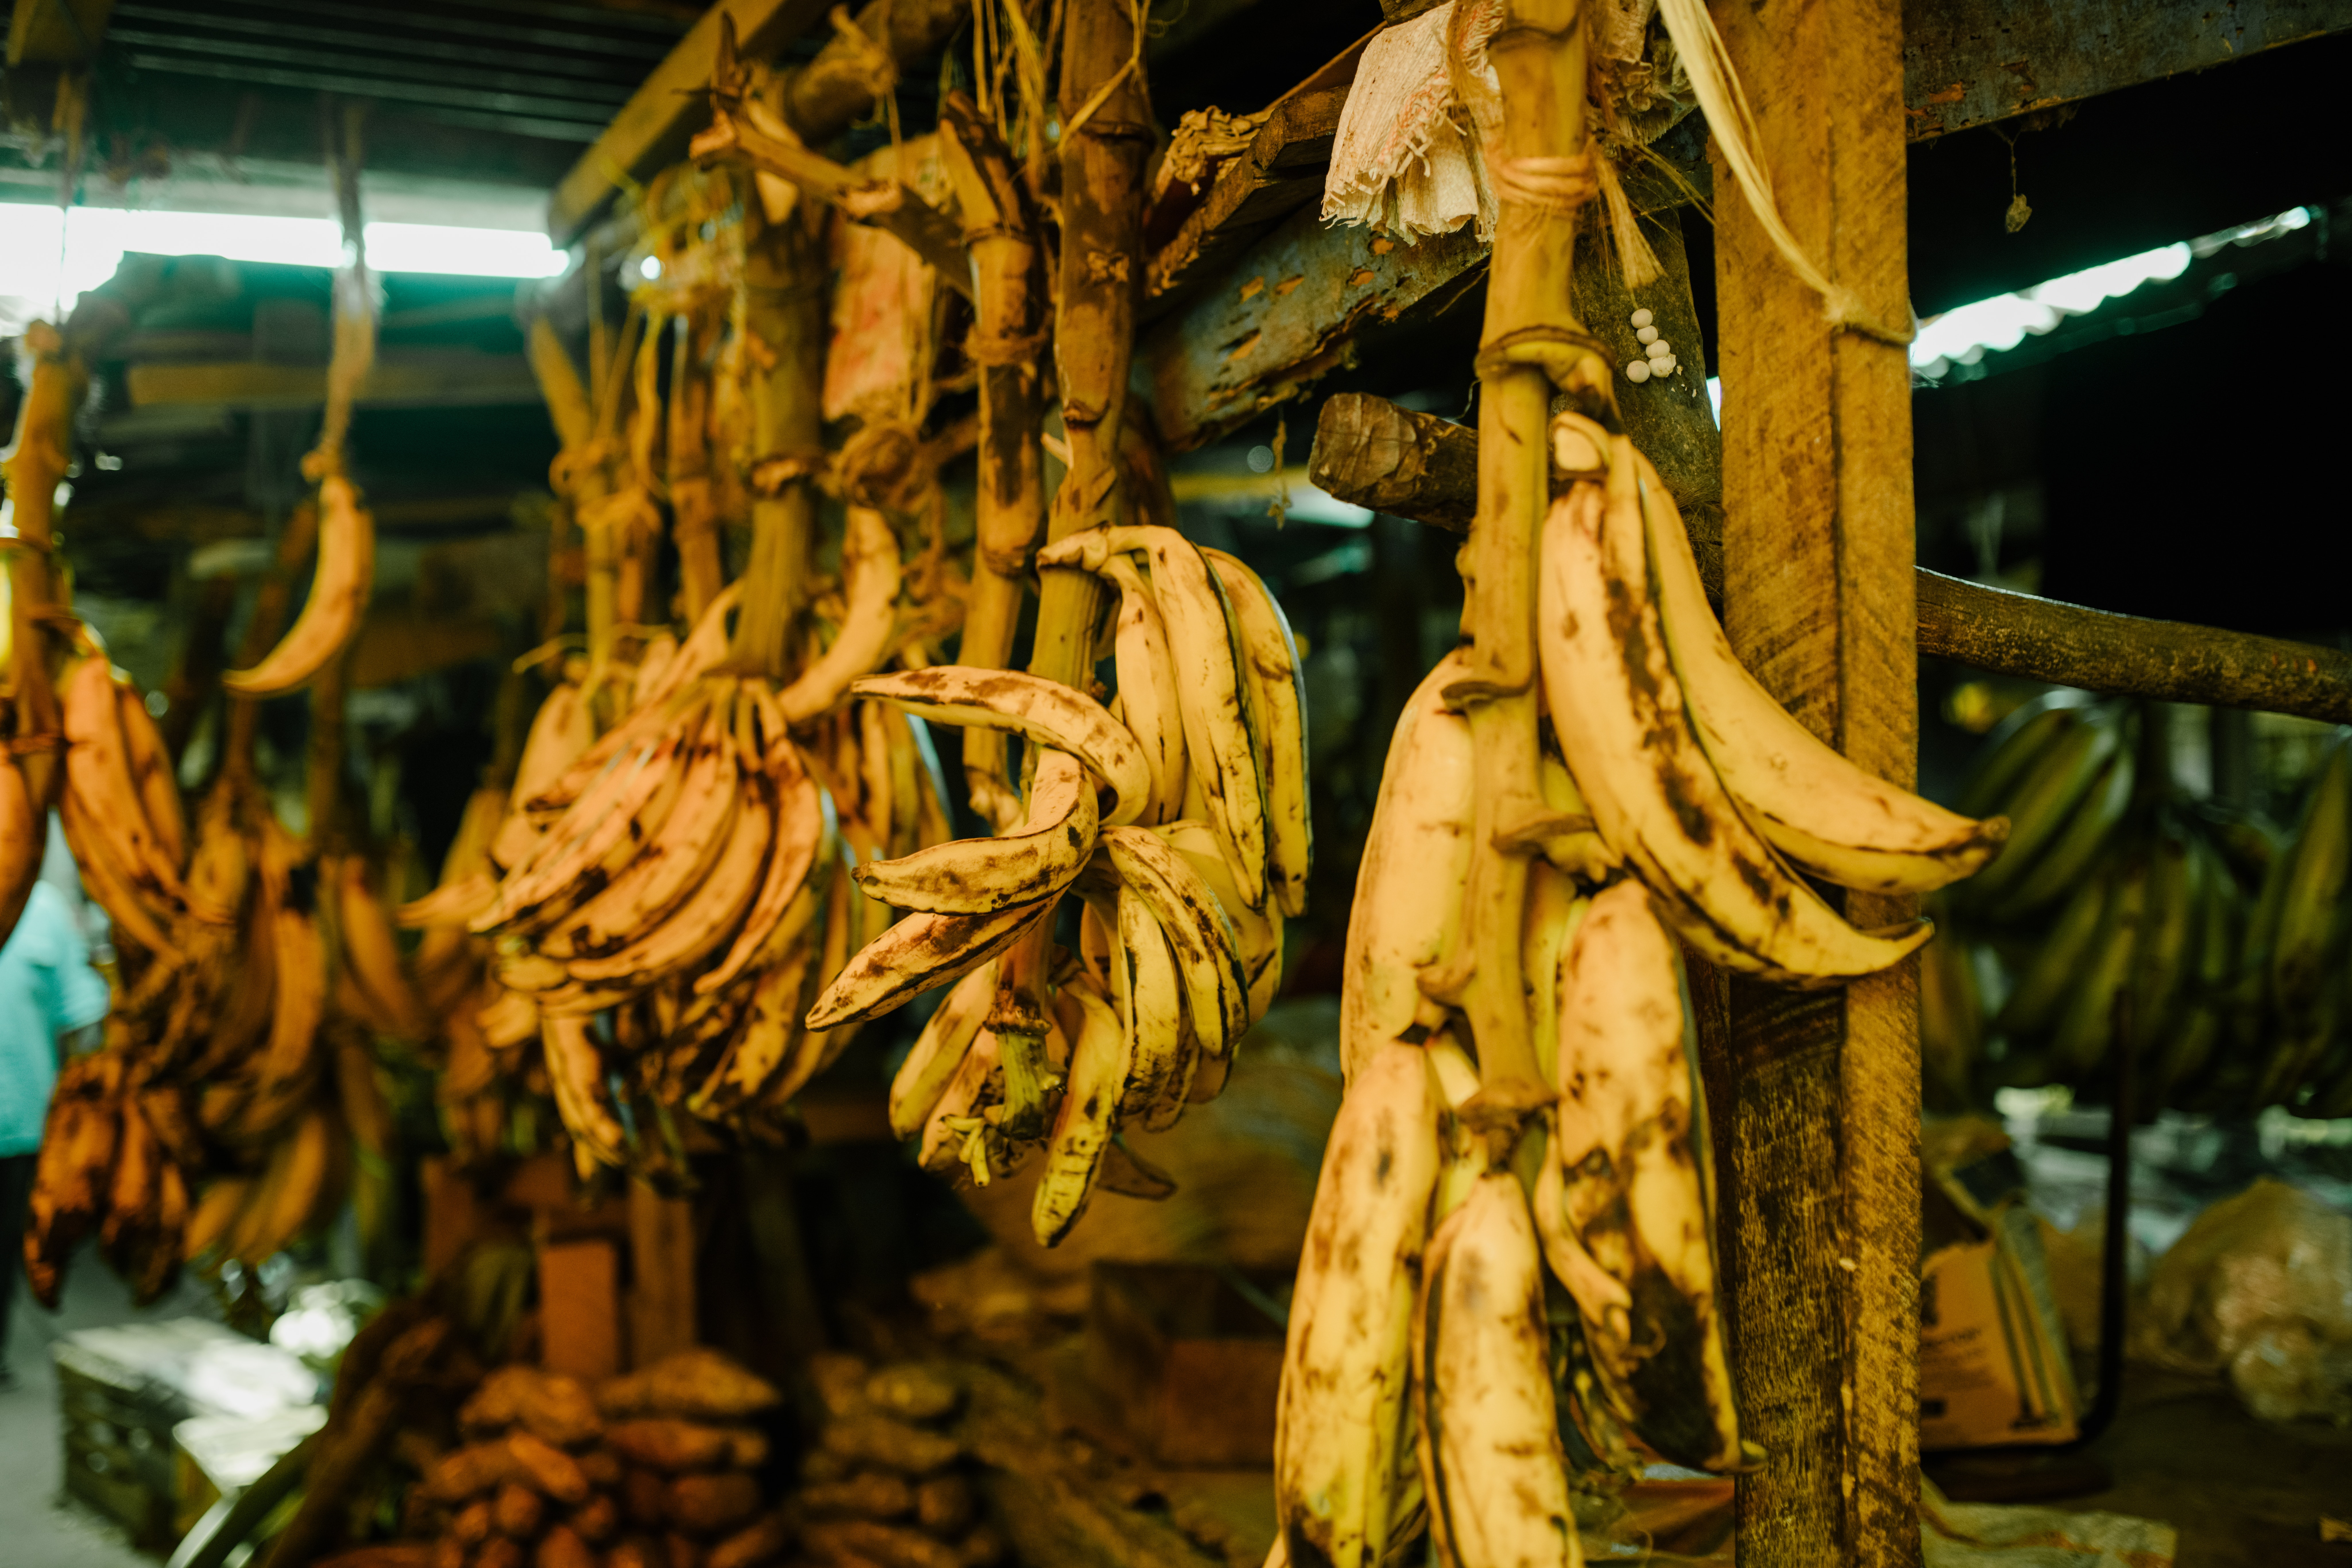 जगभरात केळीच्या १००० पेक्षा जास्त जाती उगवल्या जातात. या जाती ५० गटांमध्ये विभागल्या जाऊ शकतात. यापैकी बऱ्याच जाती खूप गोड आहेत.